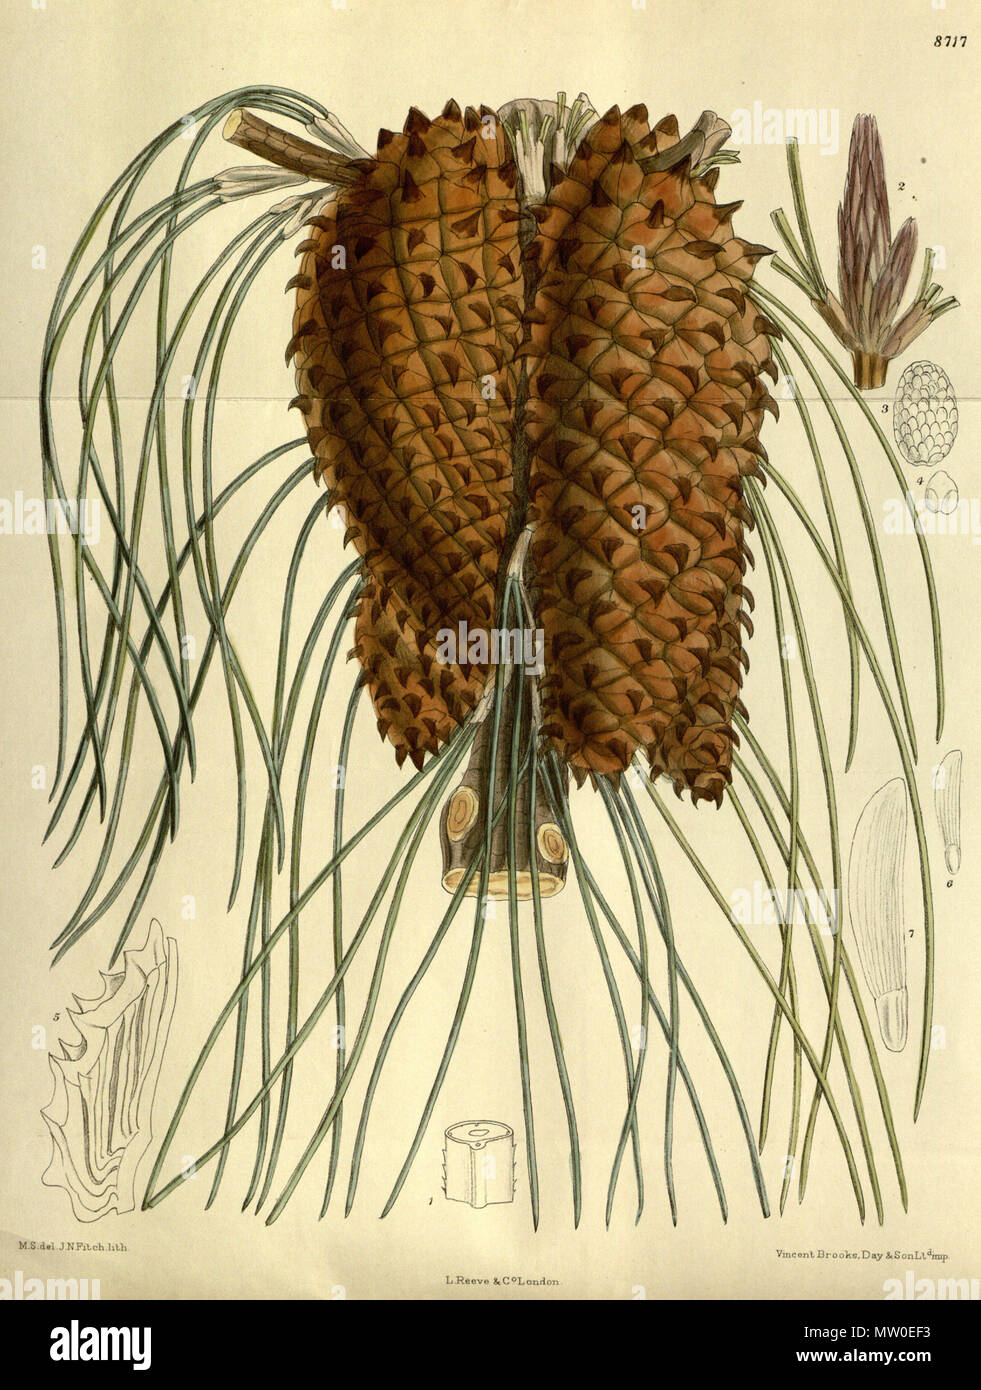 . Pinus tuberculata (= Pinus attenuata), Pinaceae . 1917. M.S. del., J.N.Fitch lith. 485 Pinus tuberculata 143-8717 Stock Photo